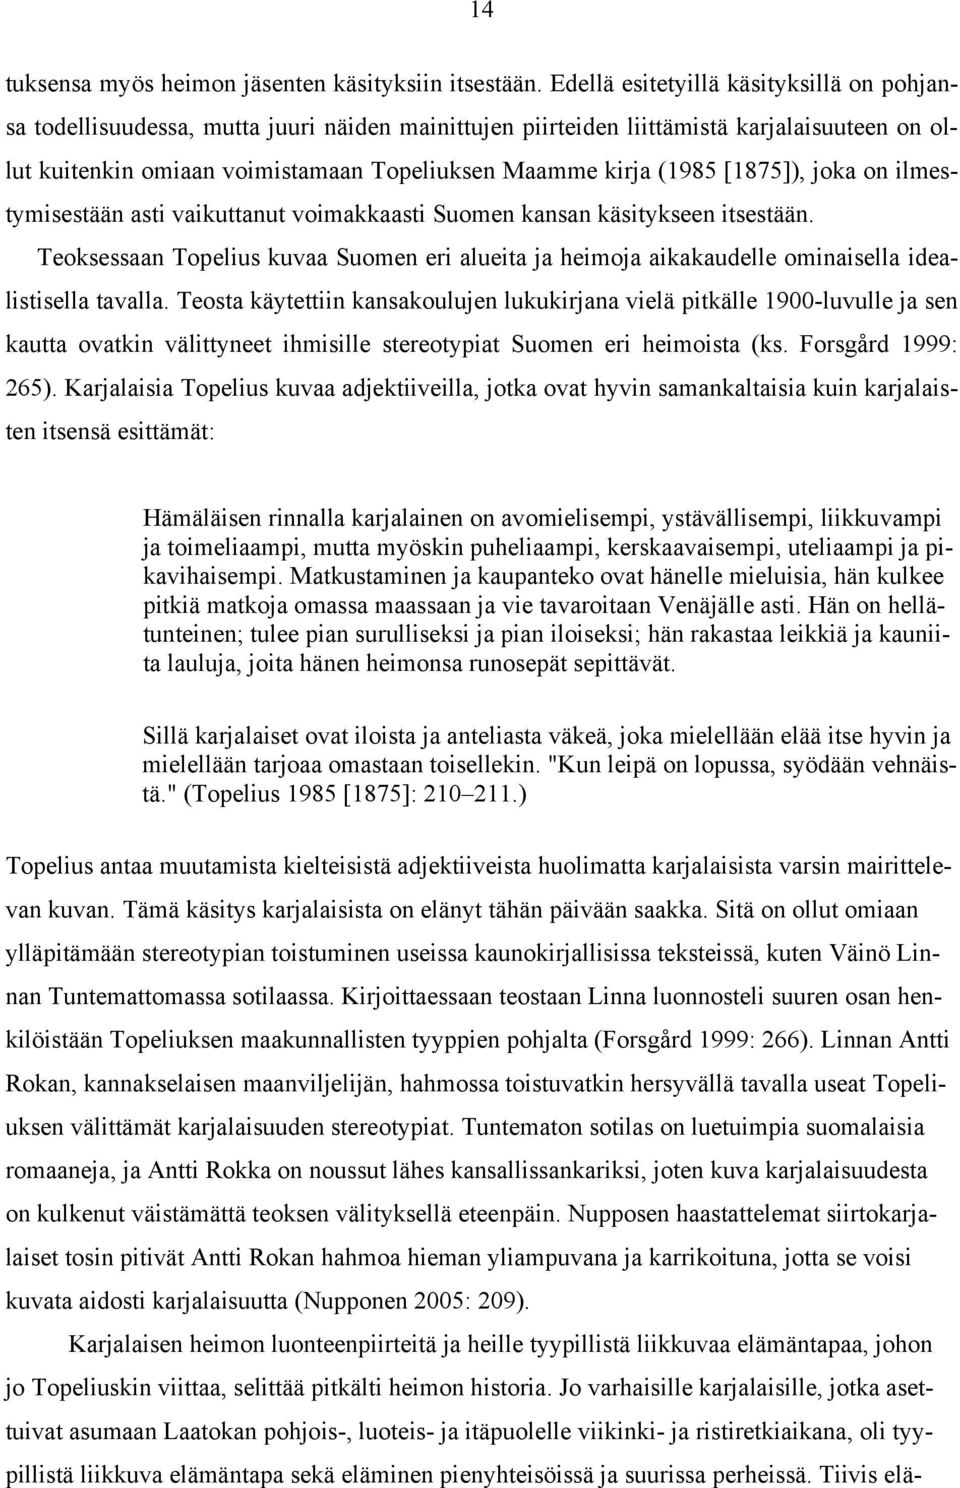 (1985 [1875]), joka on ilmestymisestään asti vaikuttanut voimakkaasti Suomen kansan käsitykseen itsestään.